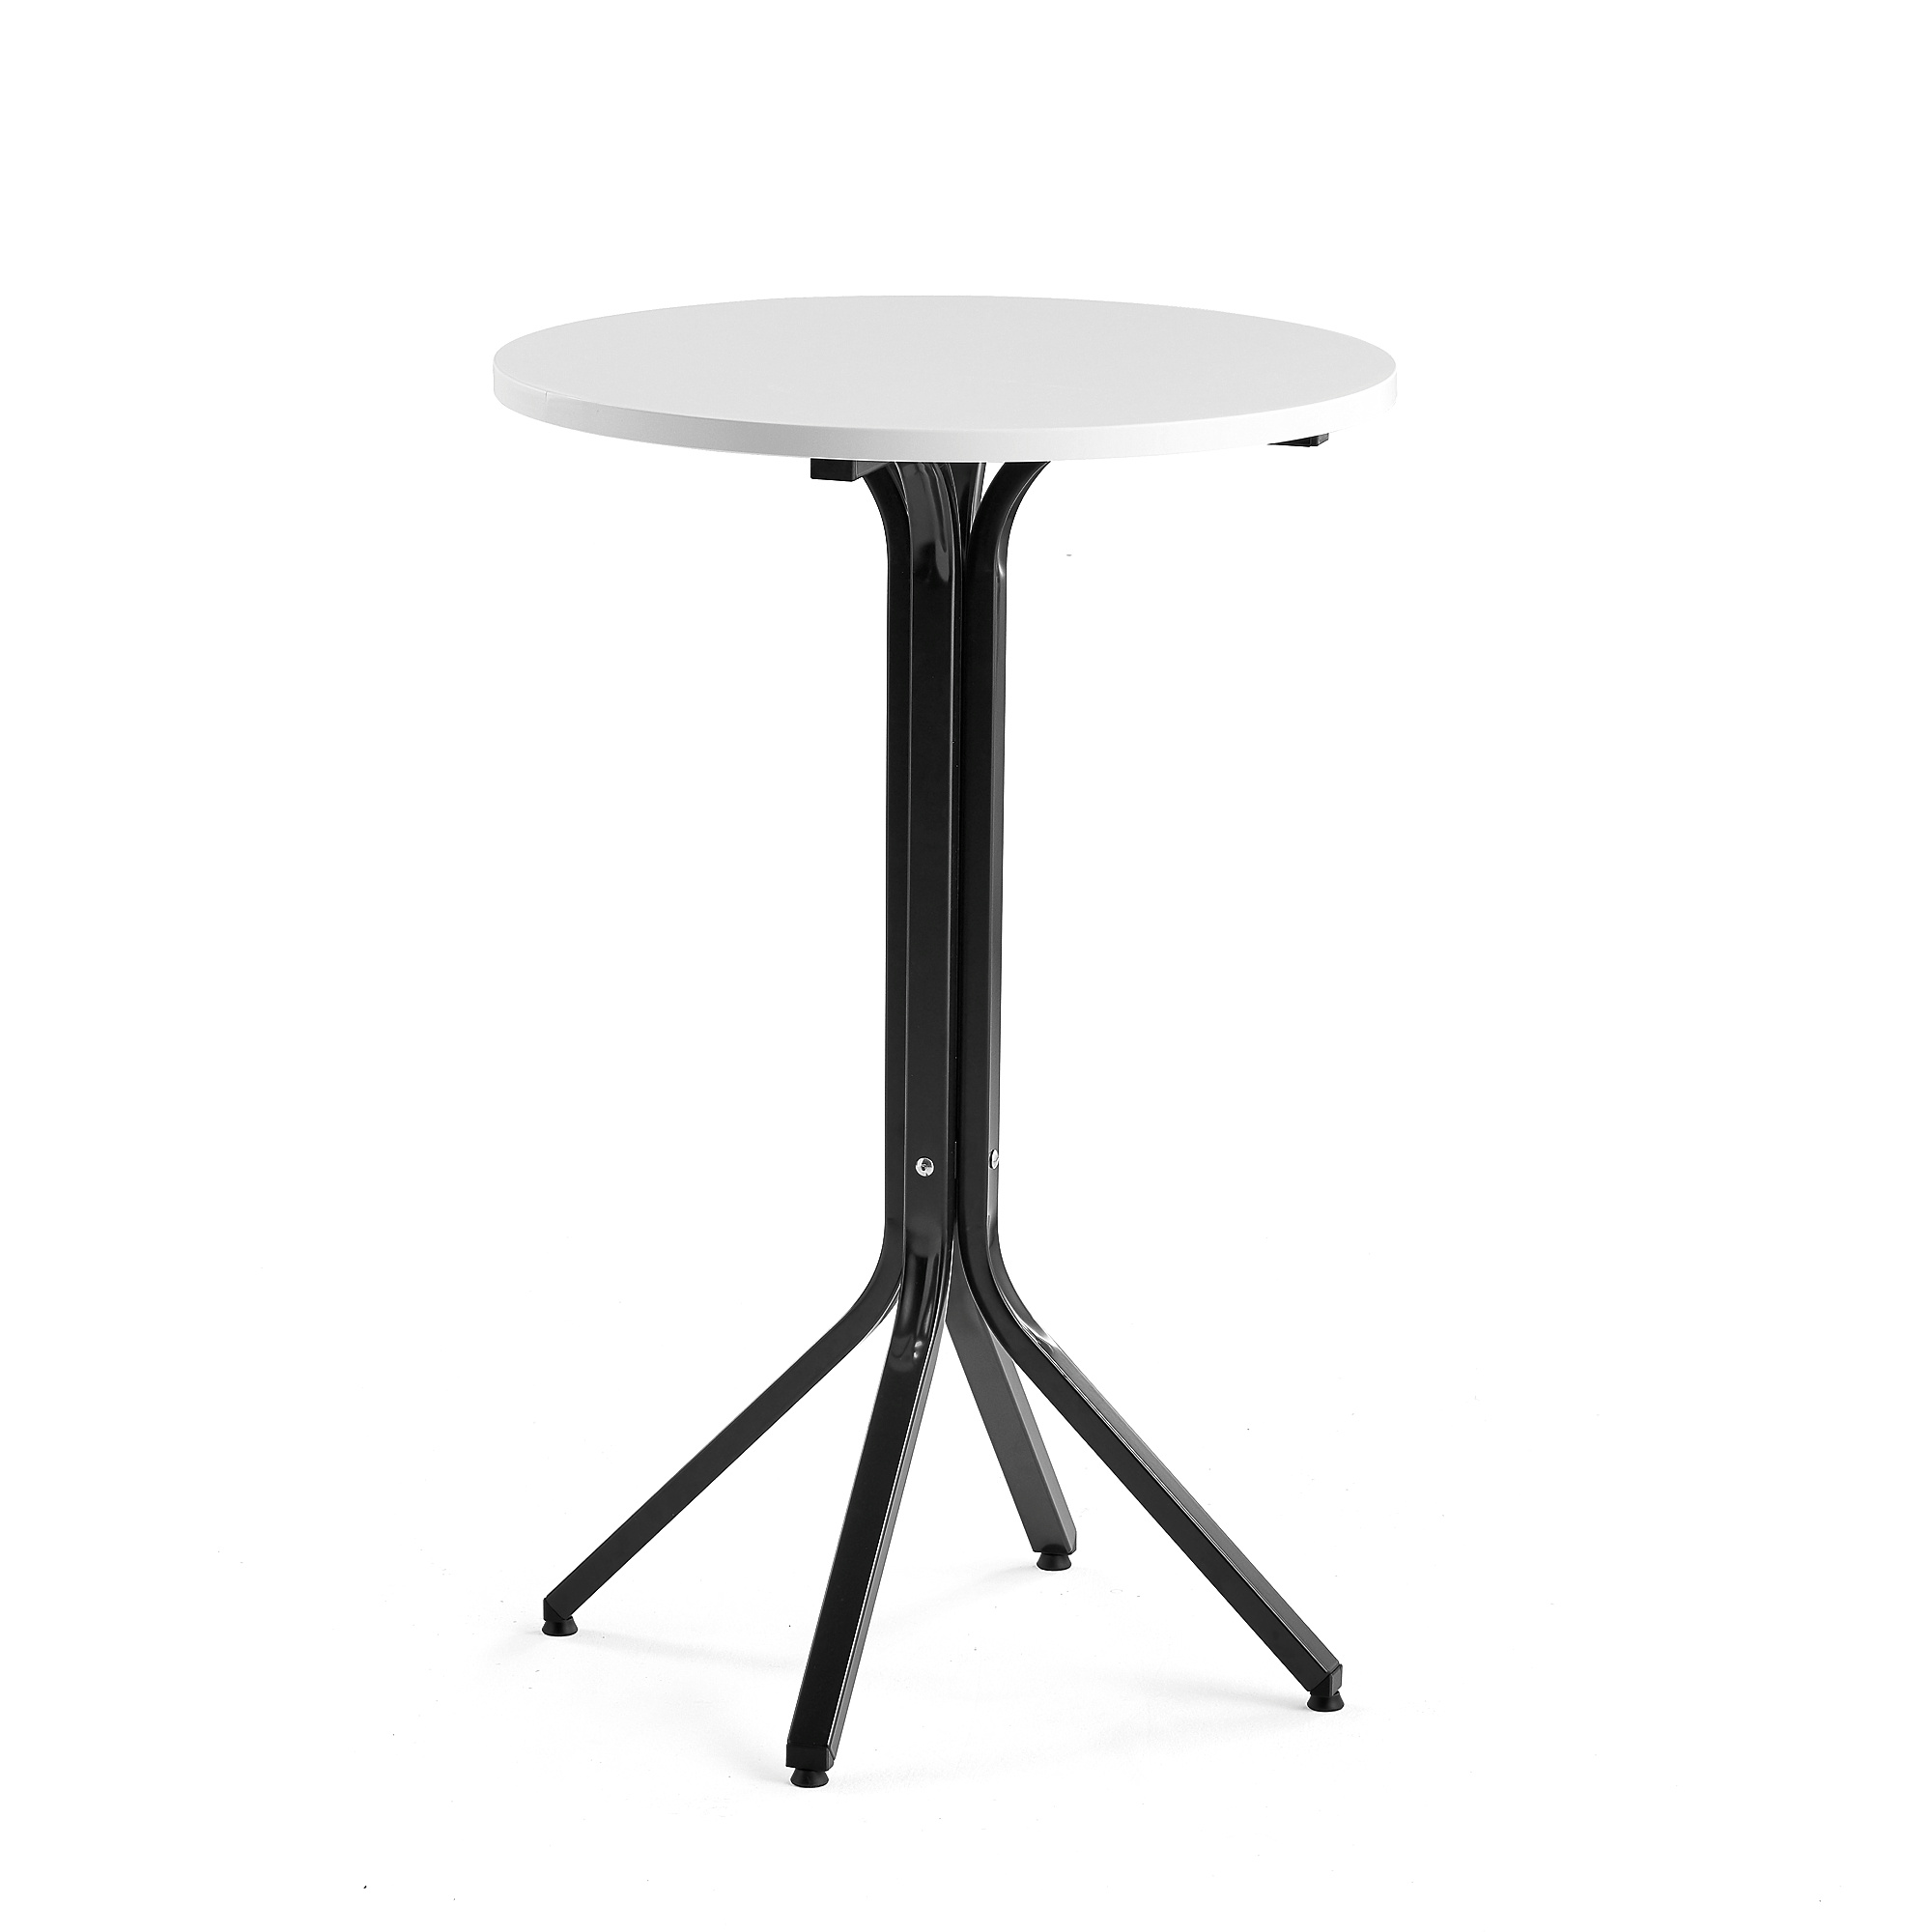 Stůl VARIOUS, Ø700 mm, výška 1050 mm, černá, bílá